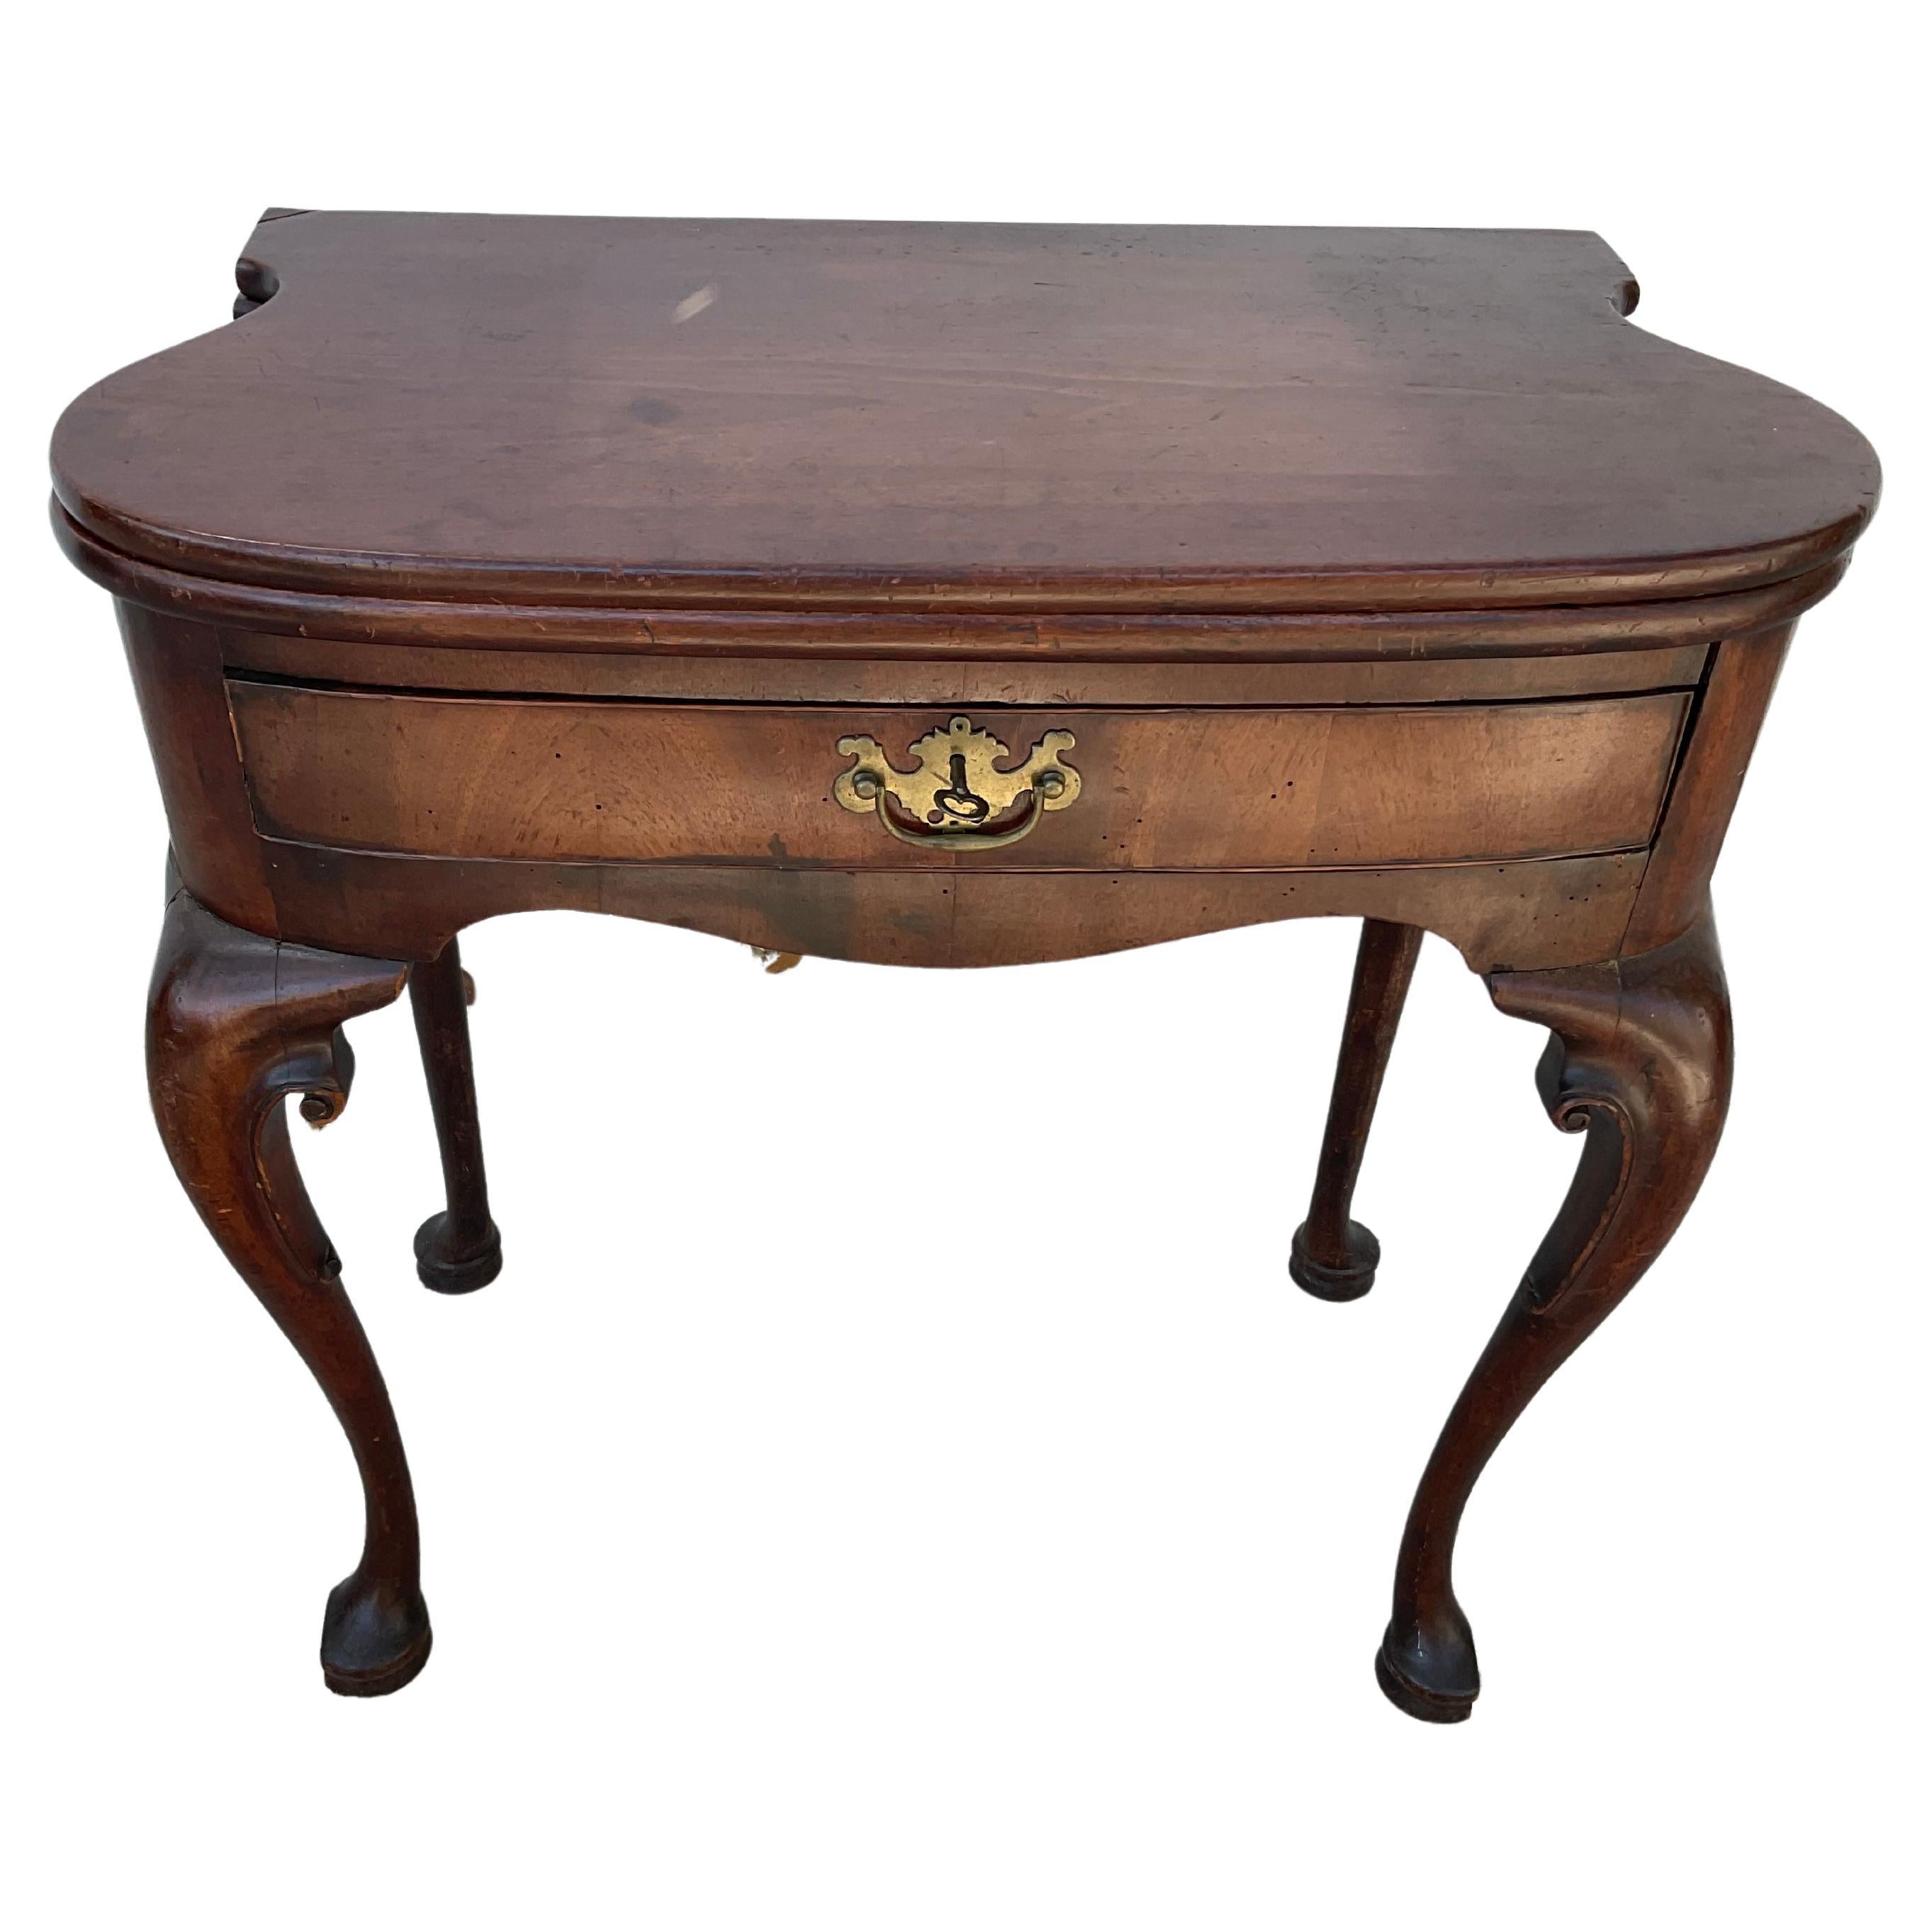 18. Jahrhundert George II Mahagoni Spiel/Tee Tisch. Mit Klappdeckel und einer Schublade. Geöffnet ist der Tisch 30,75 Zoll groß. Es handelt sich um eine seltene Form mit übertrieben geformten Seiten. Wunderbare alte warme reiche Patina.